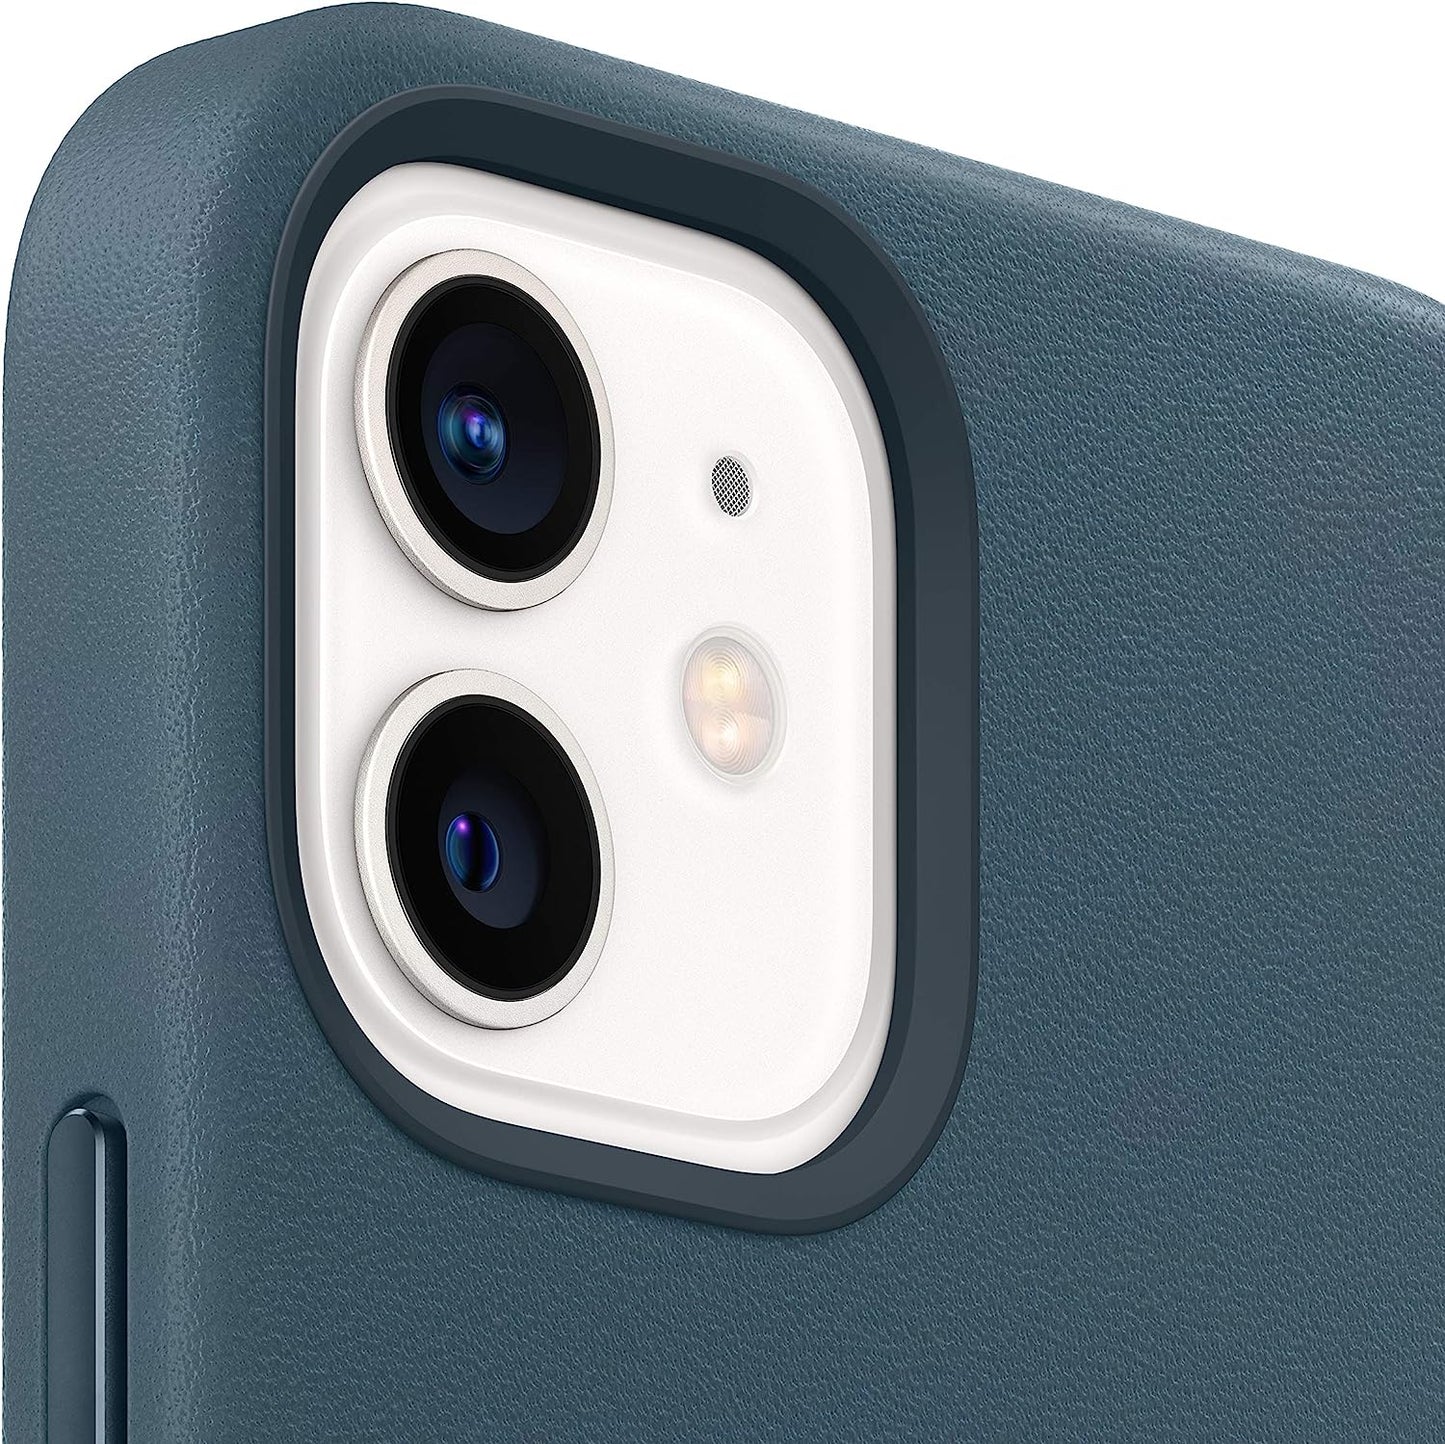 حافظة حماية لهاتف iPhone 12 جلدية من Apple بتقنية MagSafe لهاتف iPhone 12 Mini - ازرق بالتيك